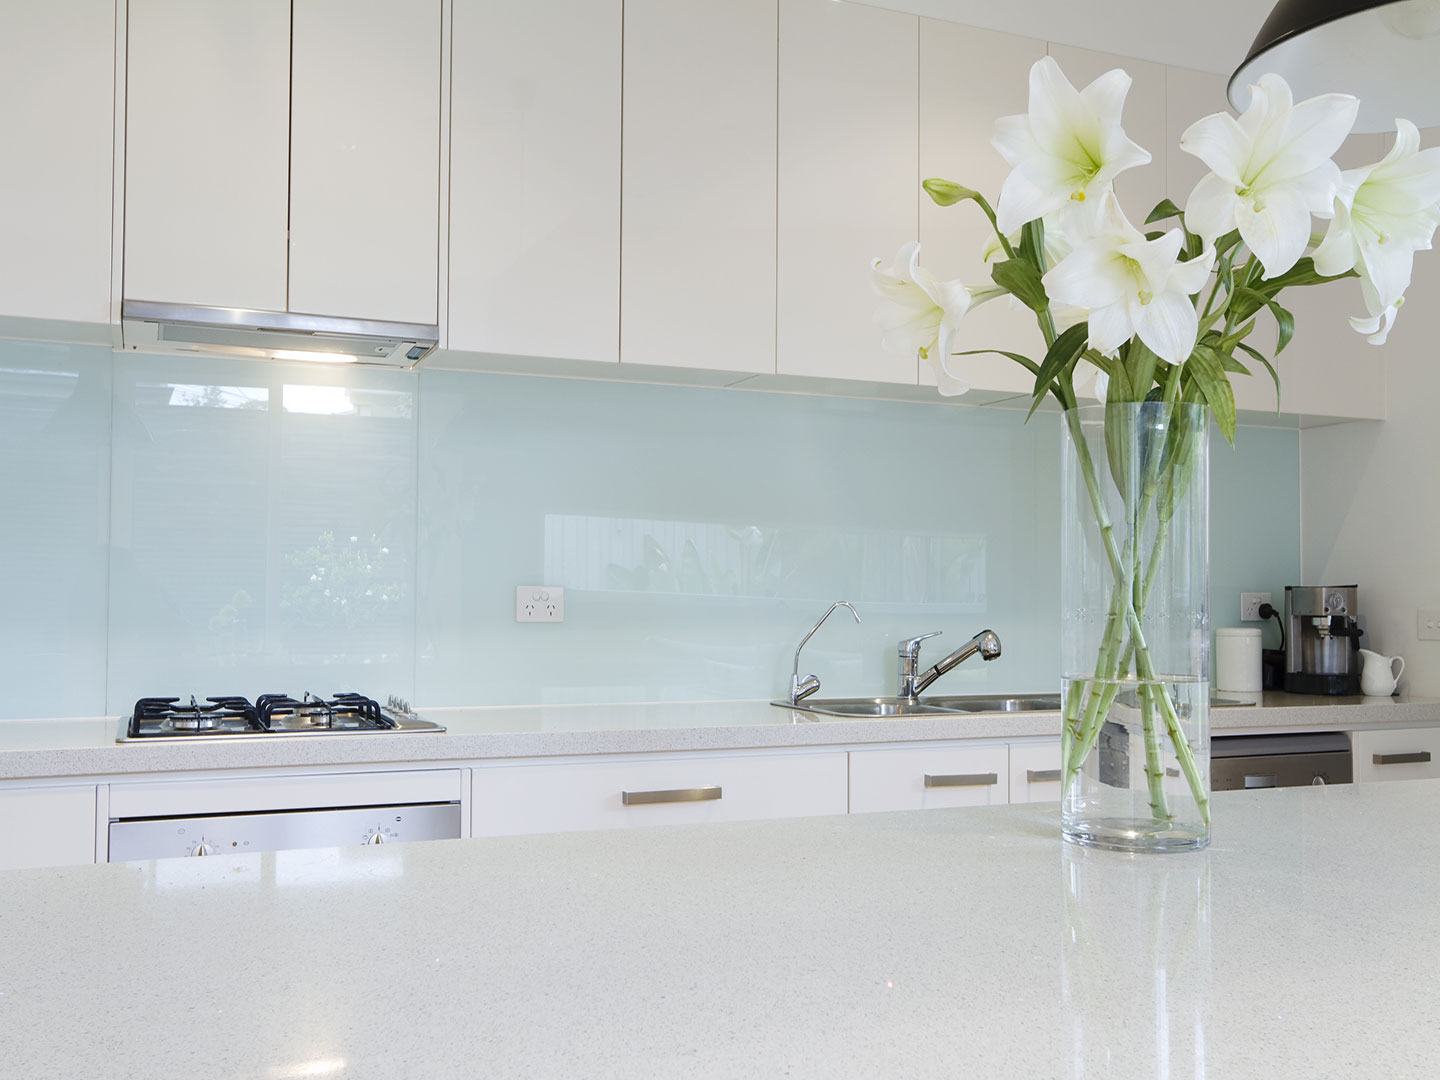 Backsplash bằng mặt kính có giá thành rẻ, dễ lau chùi và thích hợp với các gia đình có gian bếp chật